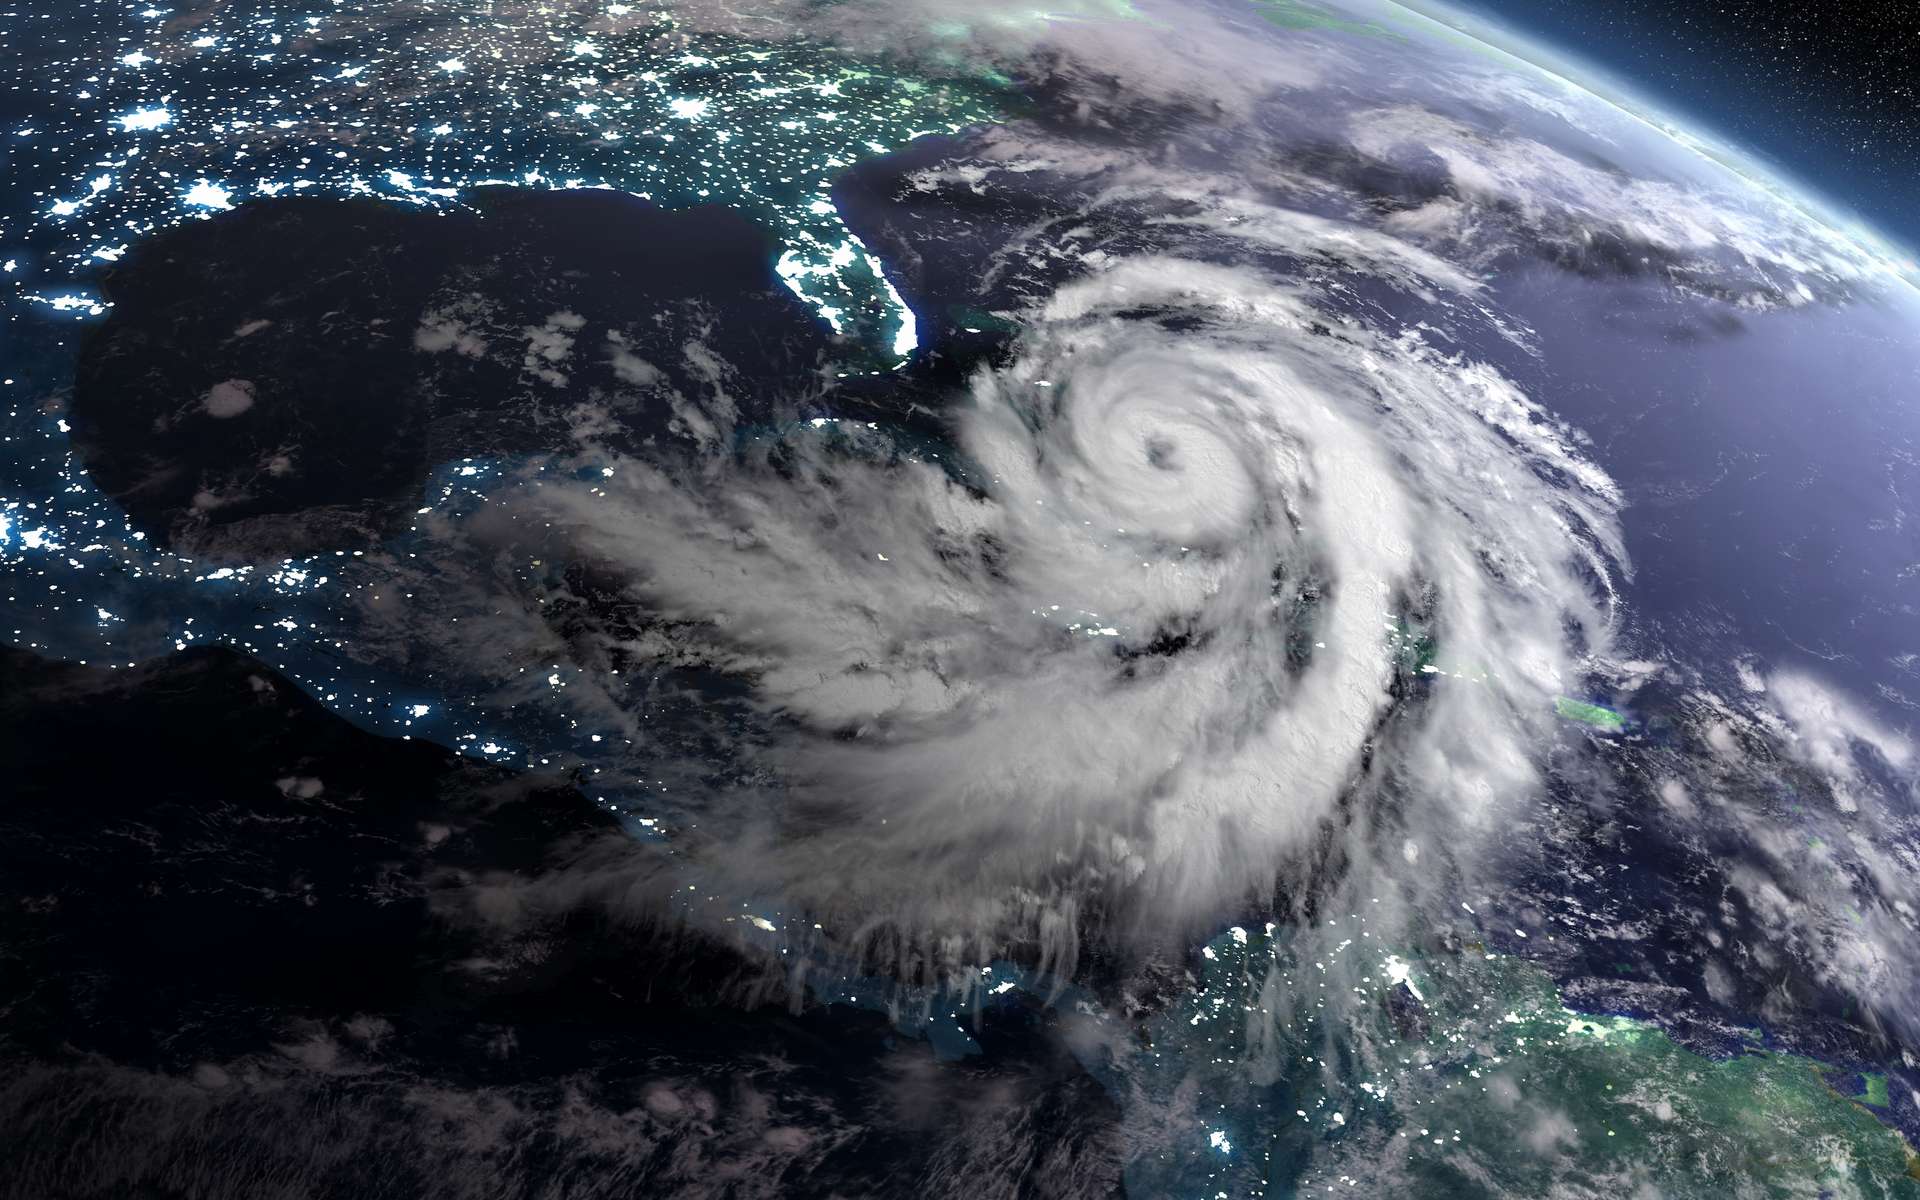 Avec les conditions climatiques actuelles, une simple dépression qui se formerait dans l'océan démultiplie ses chances de se renforcer rapidement en ouragan. © harvepino, Adobe Stock